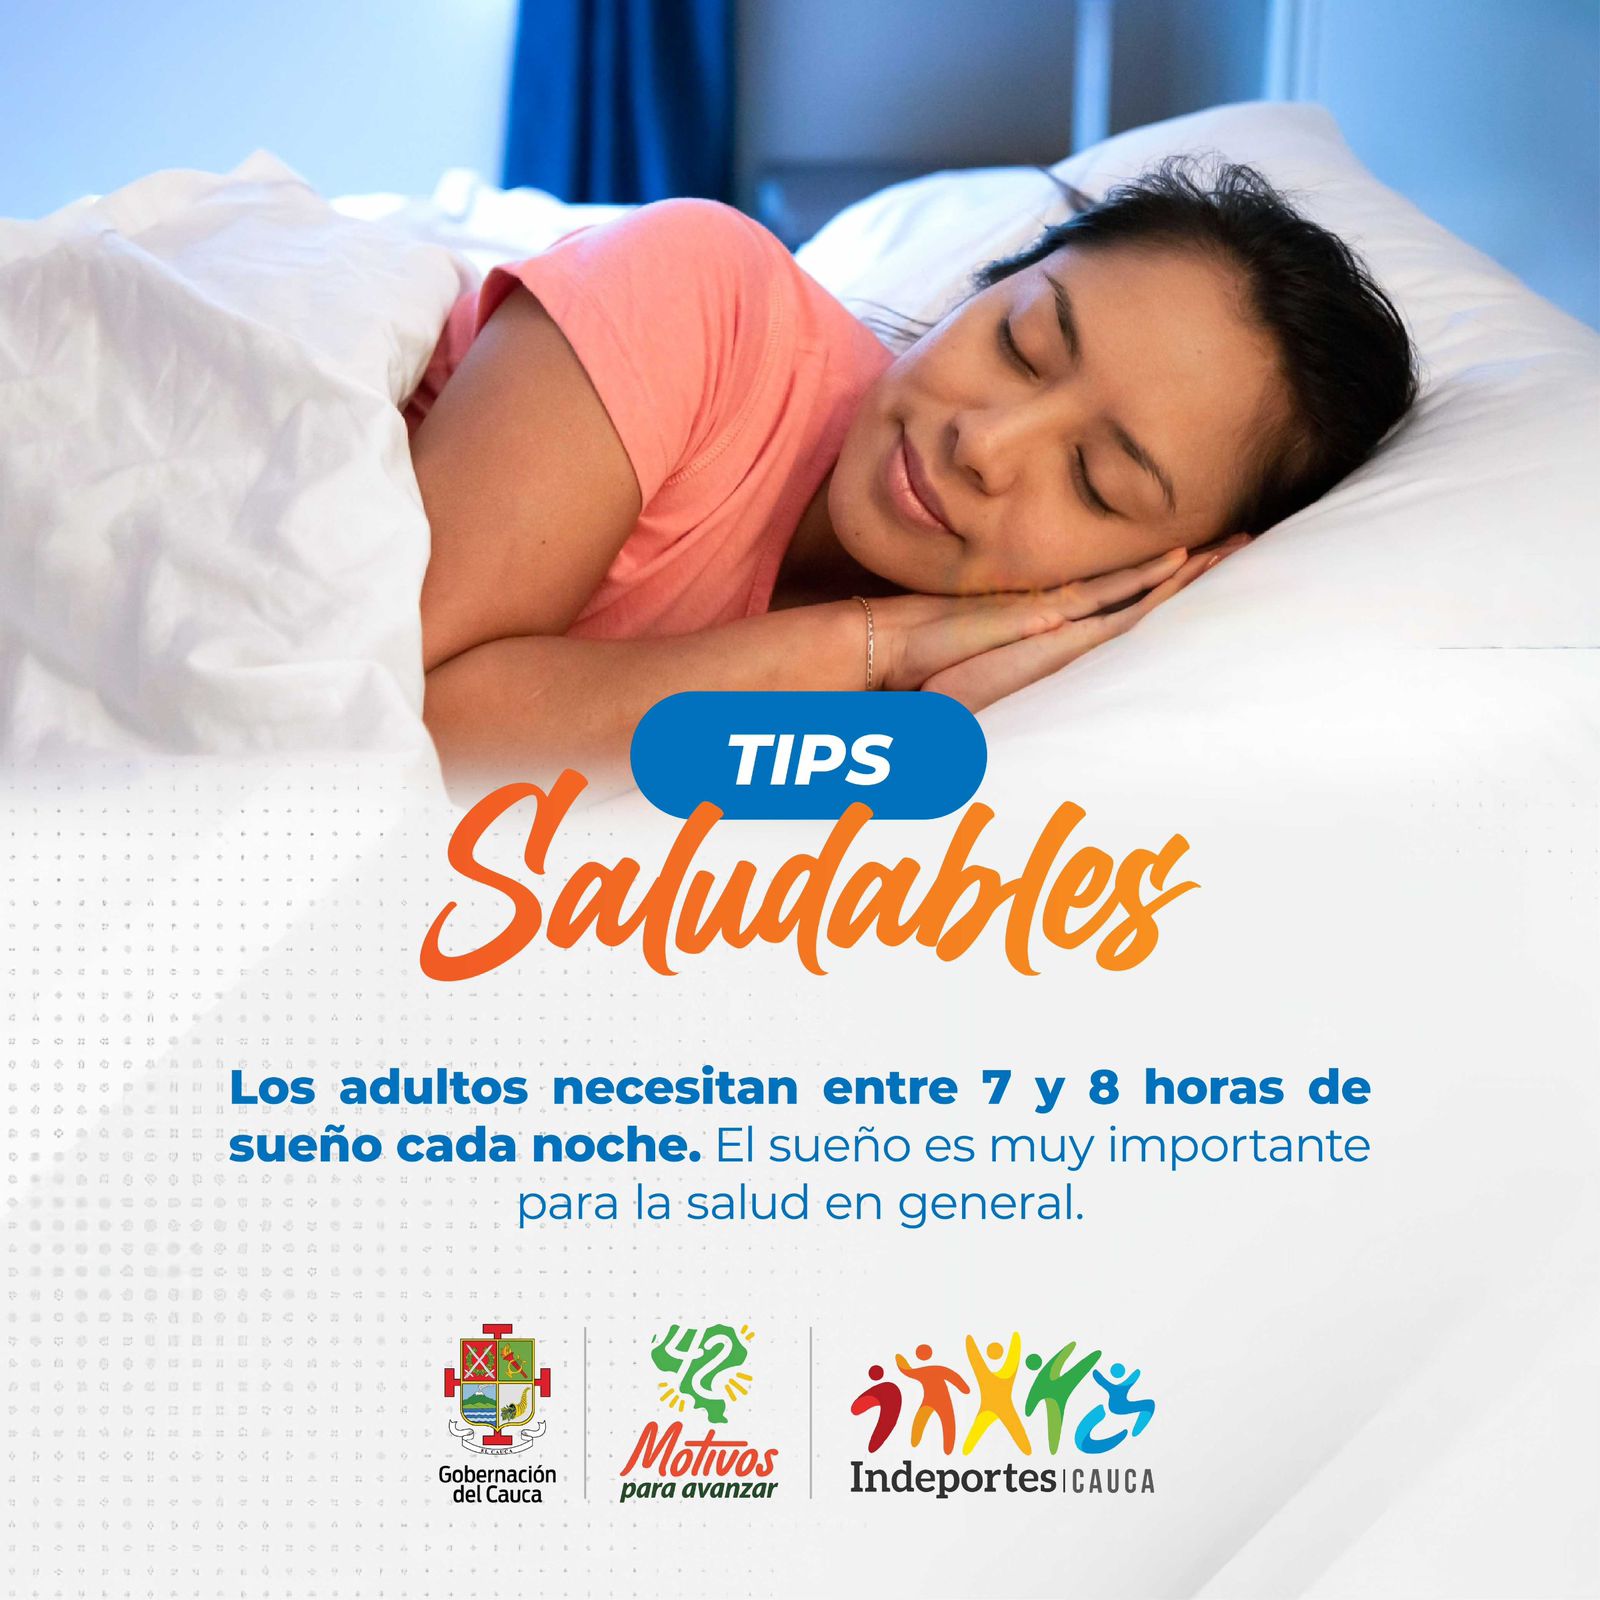 Los adultos necesitan entre 7 y 8 horas de sueño cada noche. El sueño es muy importante para su salud general.